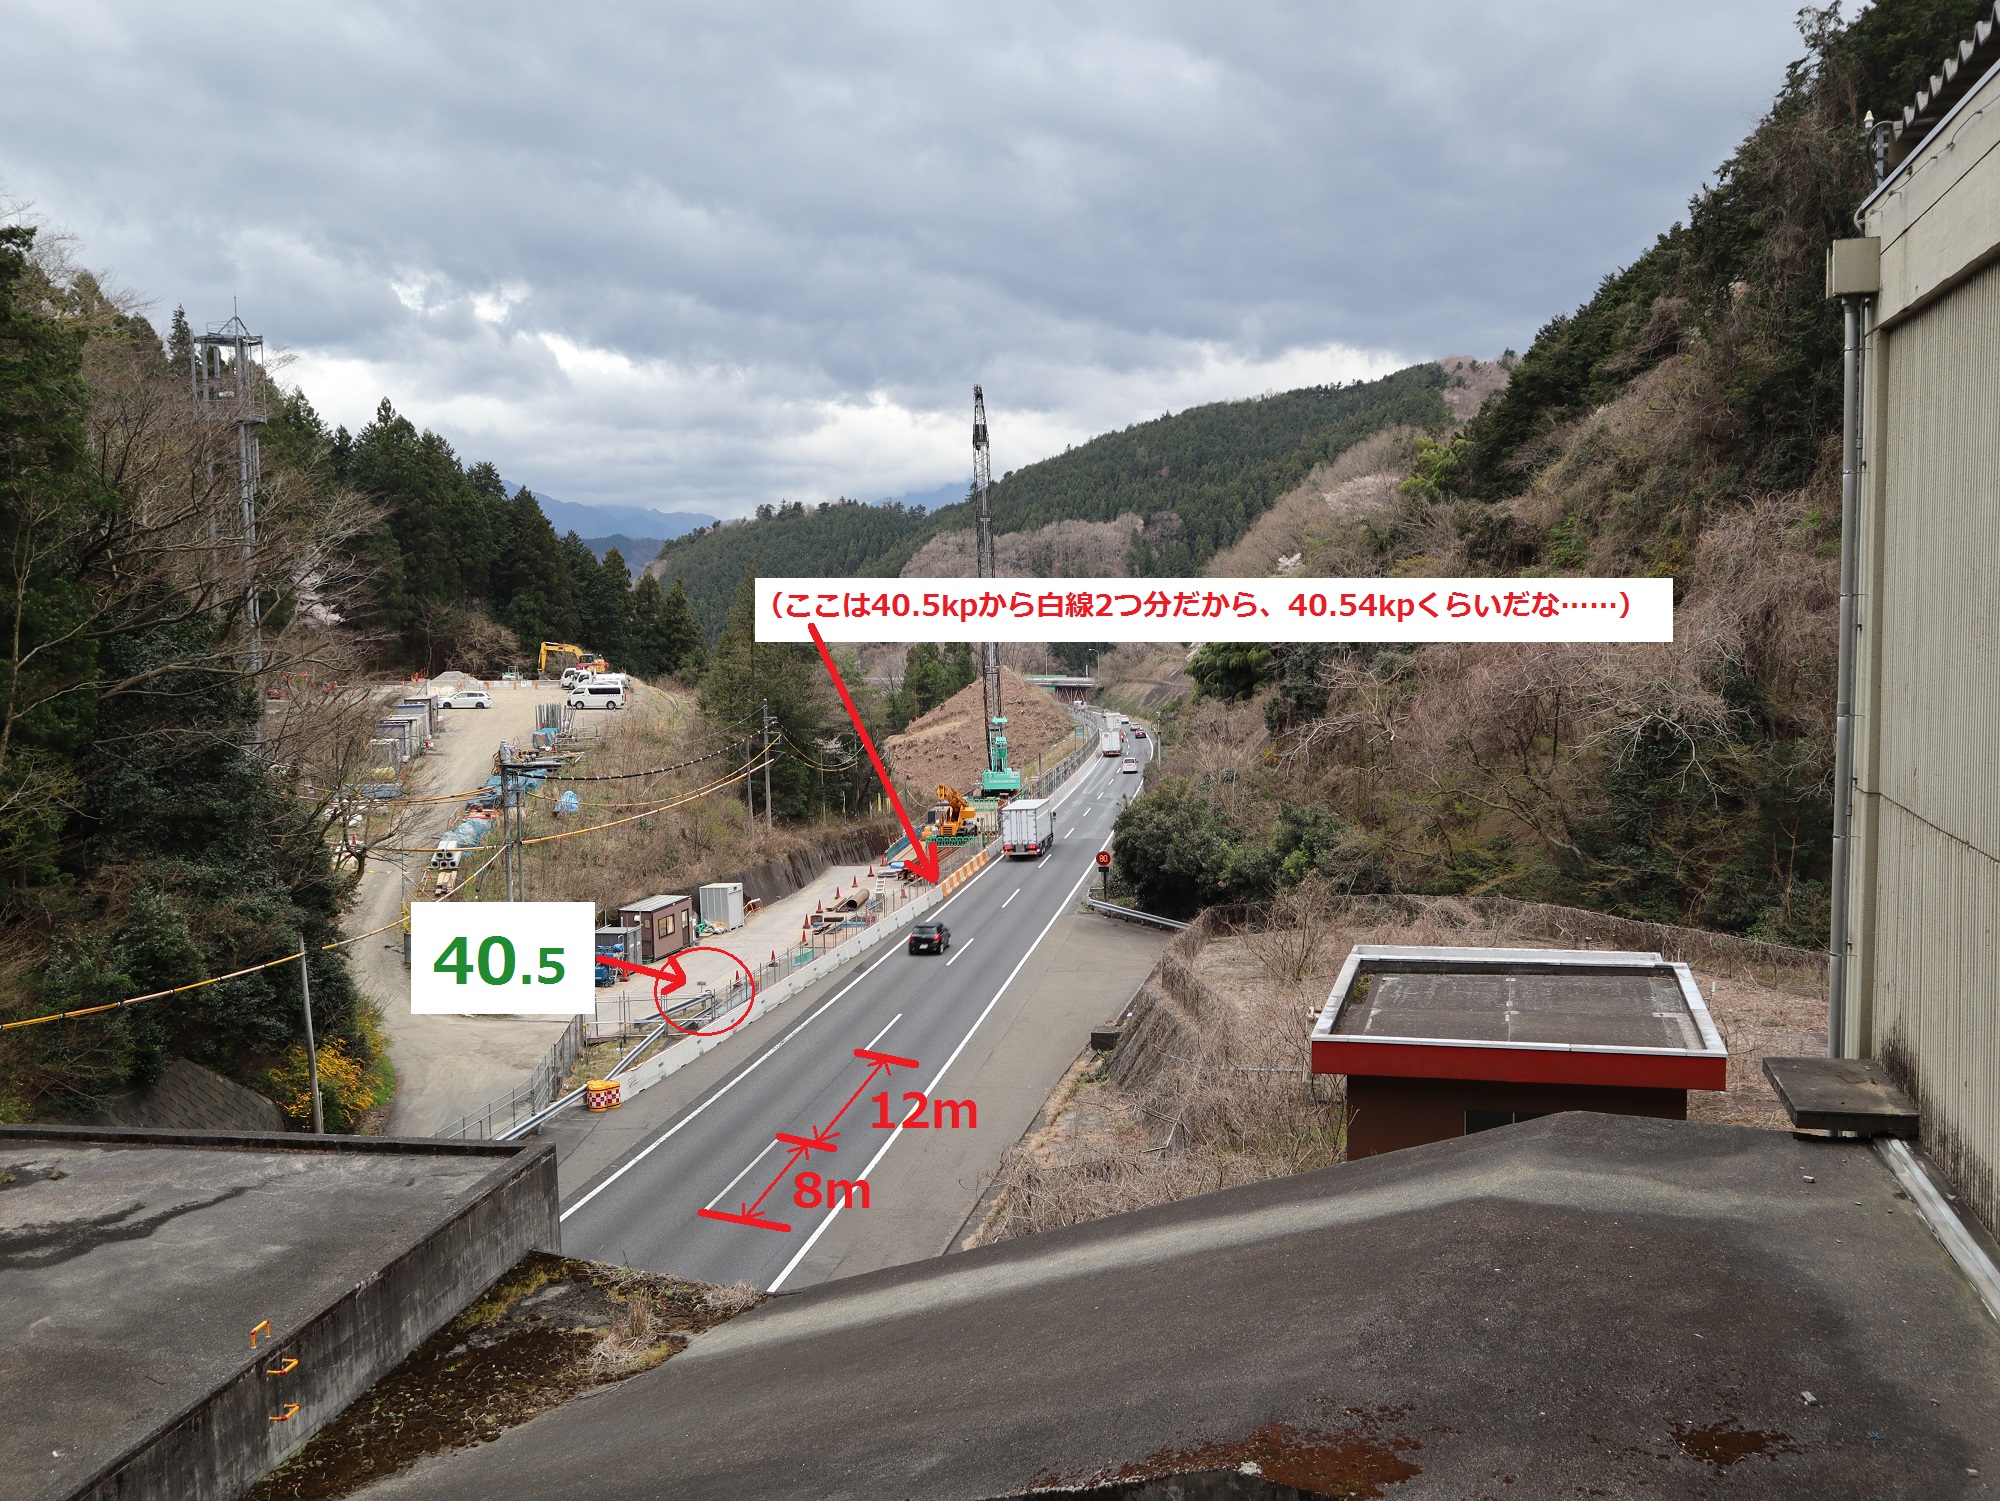 Nexco中日本 八王子工事事務所 豆知識 高速道路の車線と車線を仕切る破線 長さはどのくらいかご存知ですか 1つの破線の 長さが8m 破線と破線の間隔が12mです 1セットがちょうどmなので ご走行の際は車間距離を測る目安にしてみてください 私たち